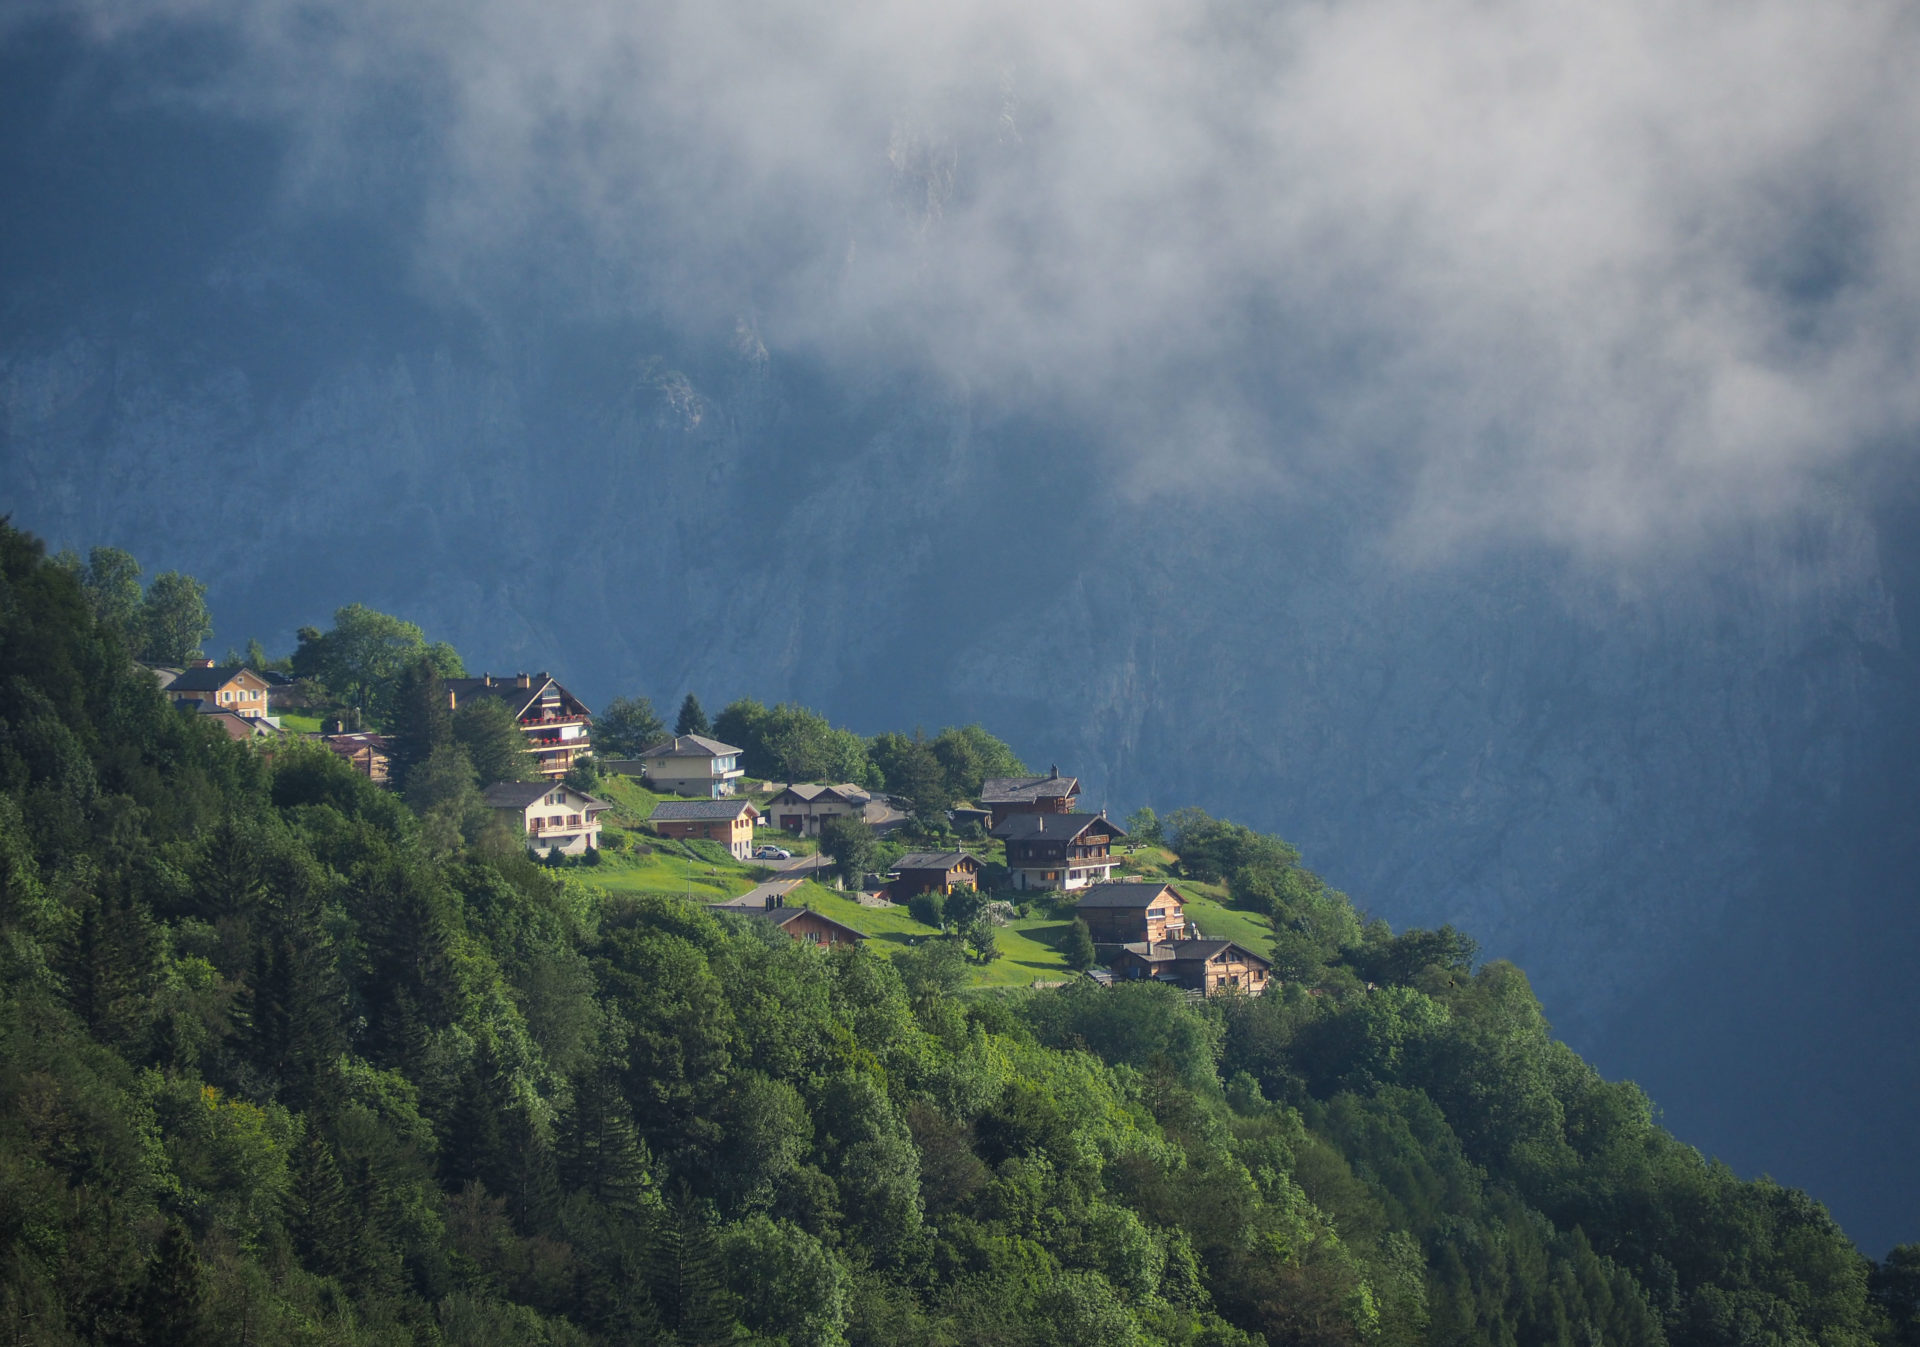 Le village de Mex sur le Tour des Dents du Midi - Faire le Tour des Dents du Midi en 6 jours en solo et en mode slow - Une randonnée itinérante, un trek à découvrir en Suisse dans le Valais